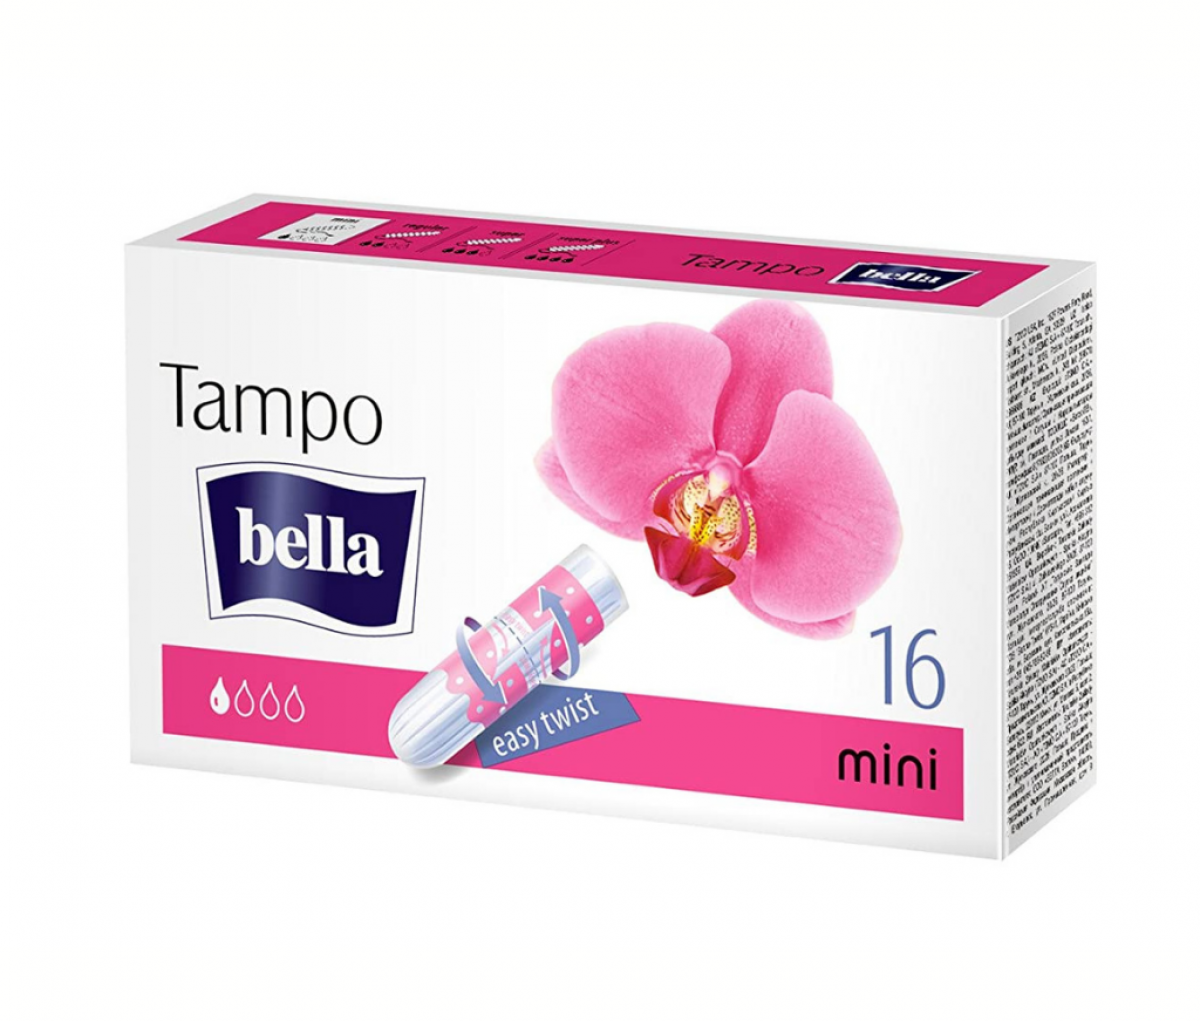 TZMO Bella Tampo Mini A16